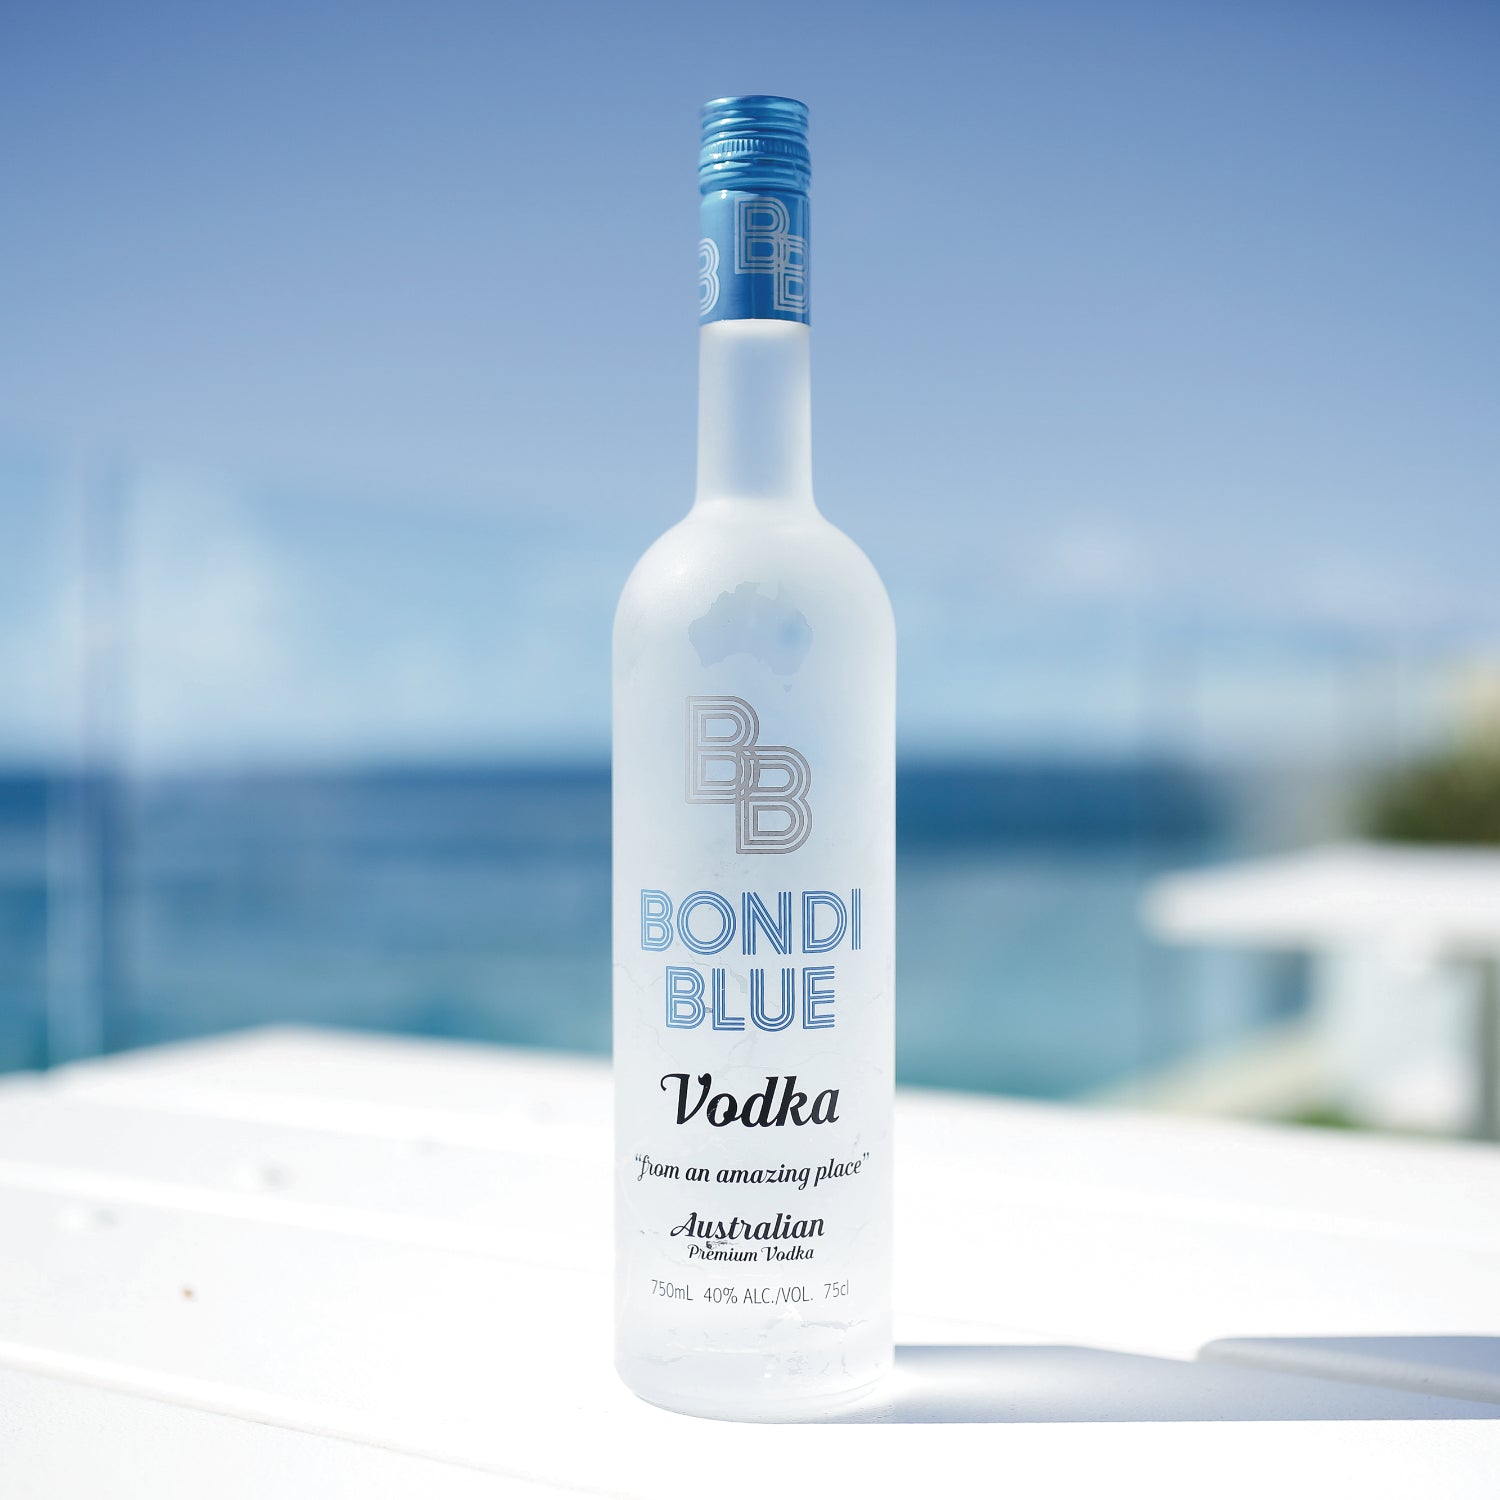 Bondi Blue Premium Alcohol Vodka